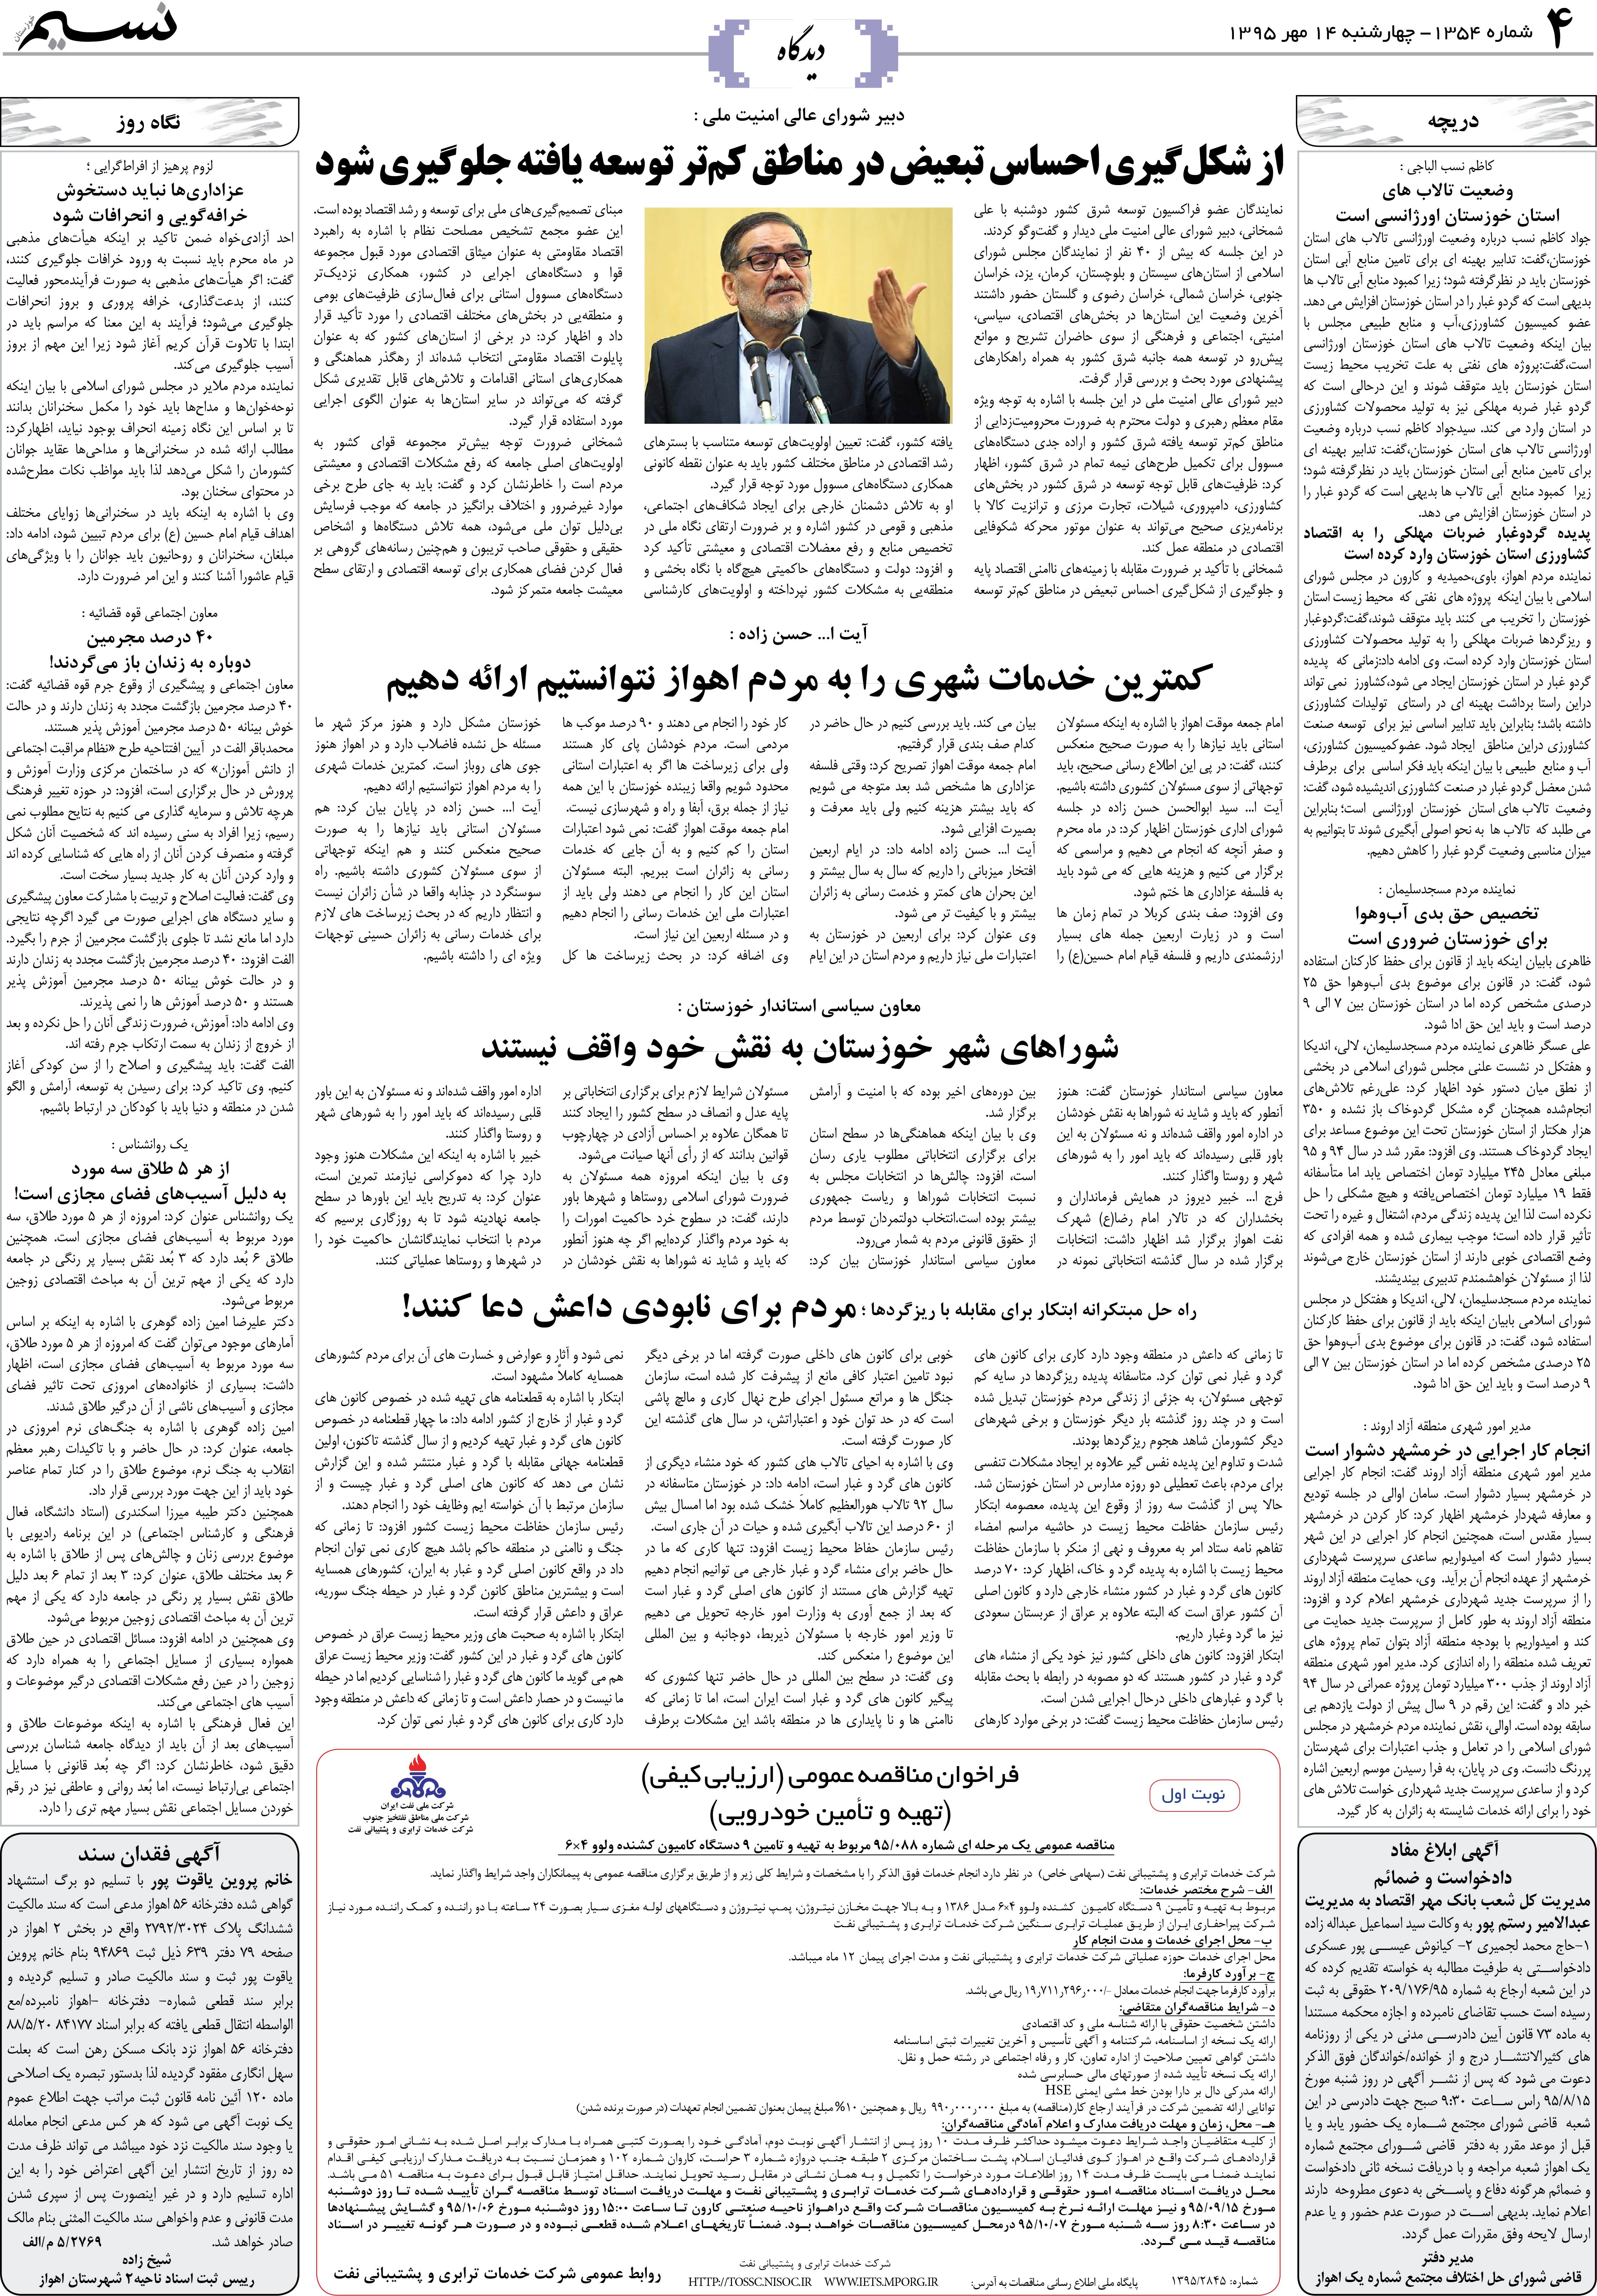 صفحه دیدگاه روزنامه نسیم شماره 1354